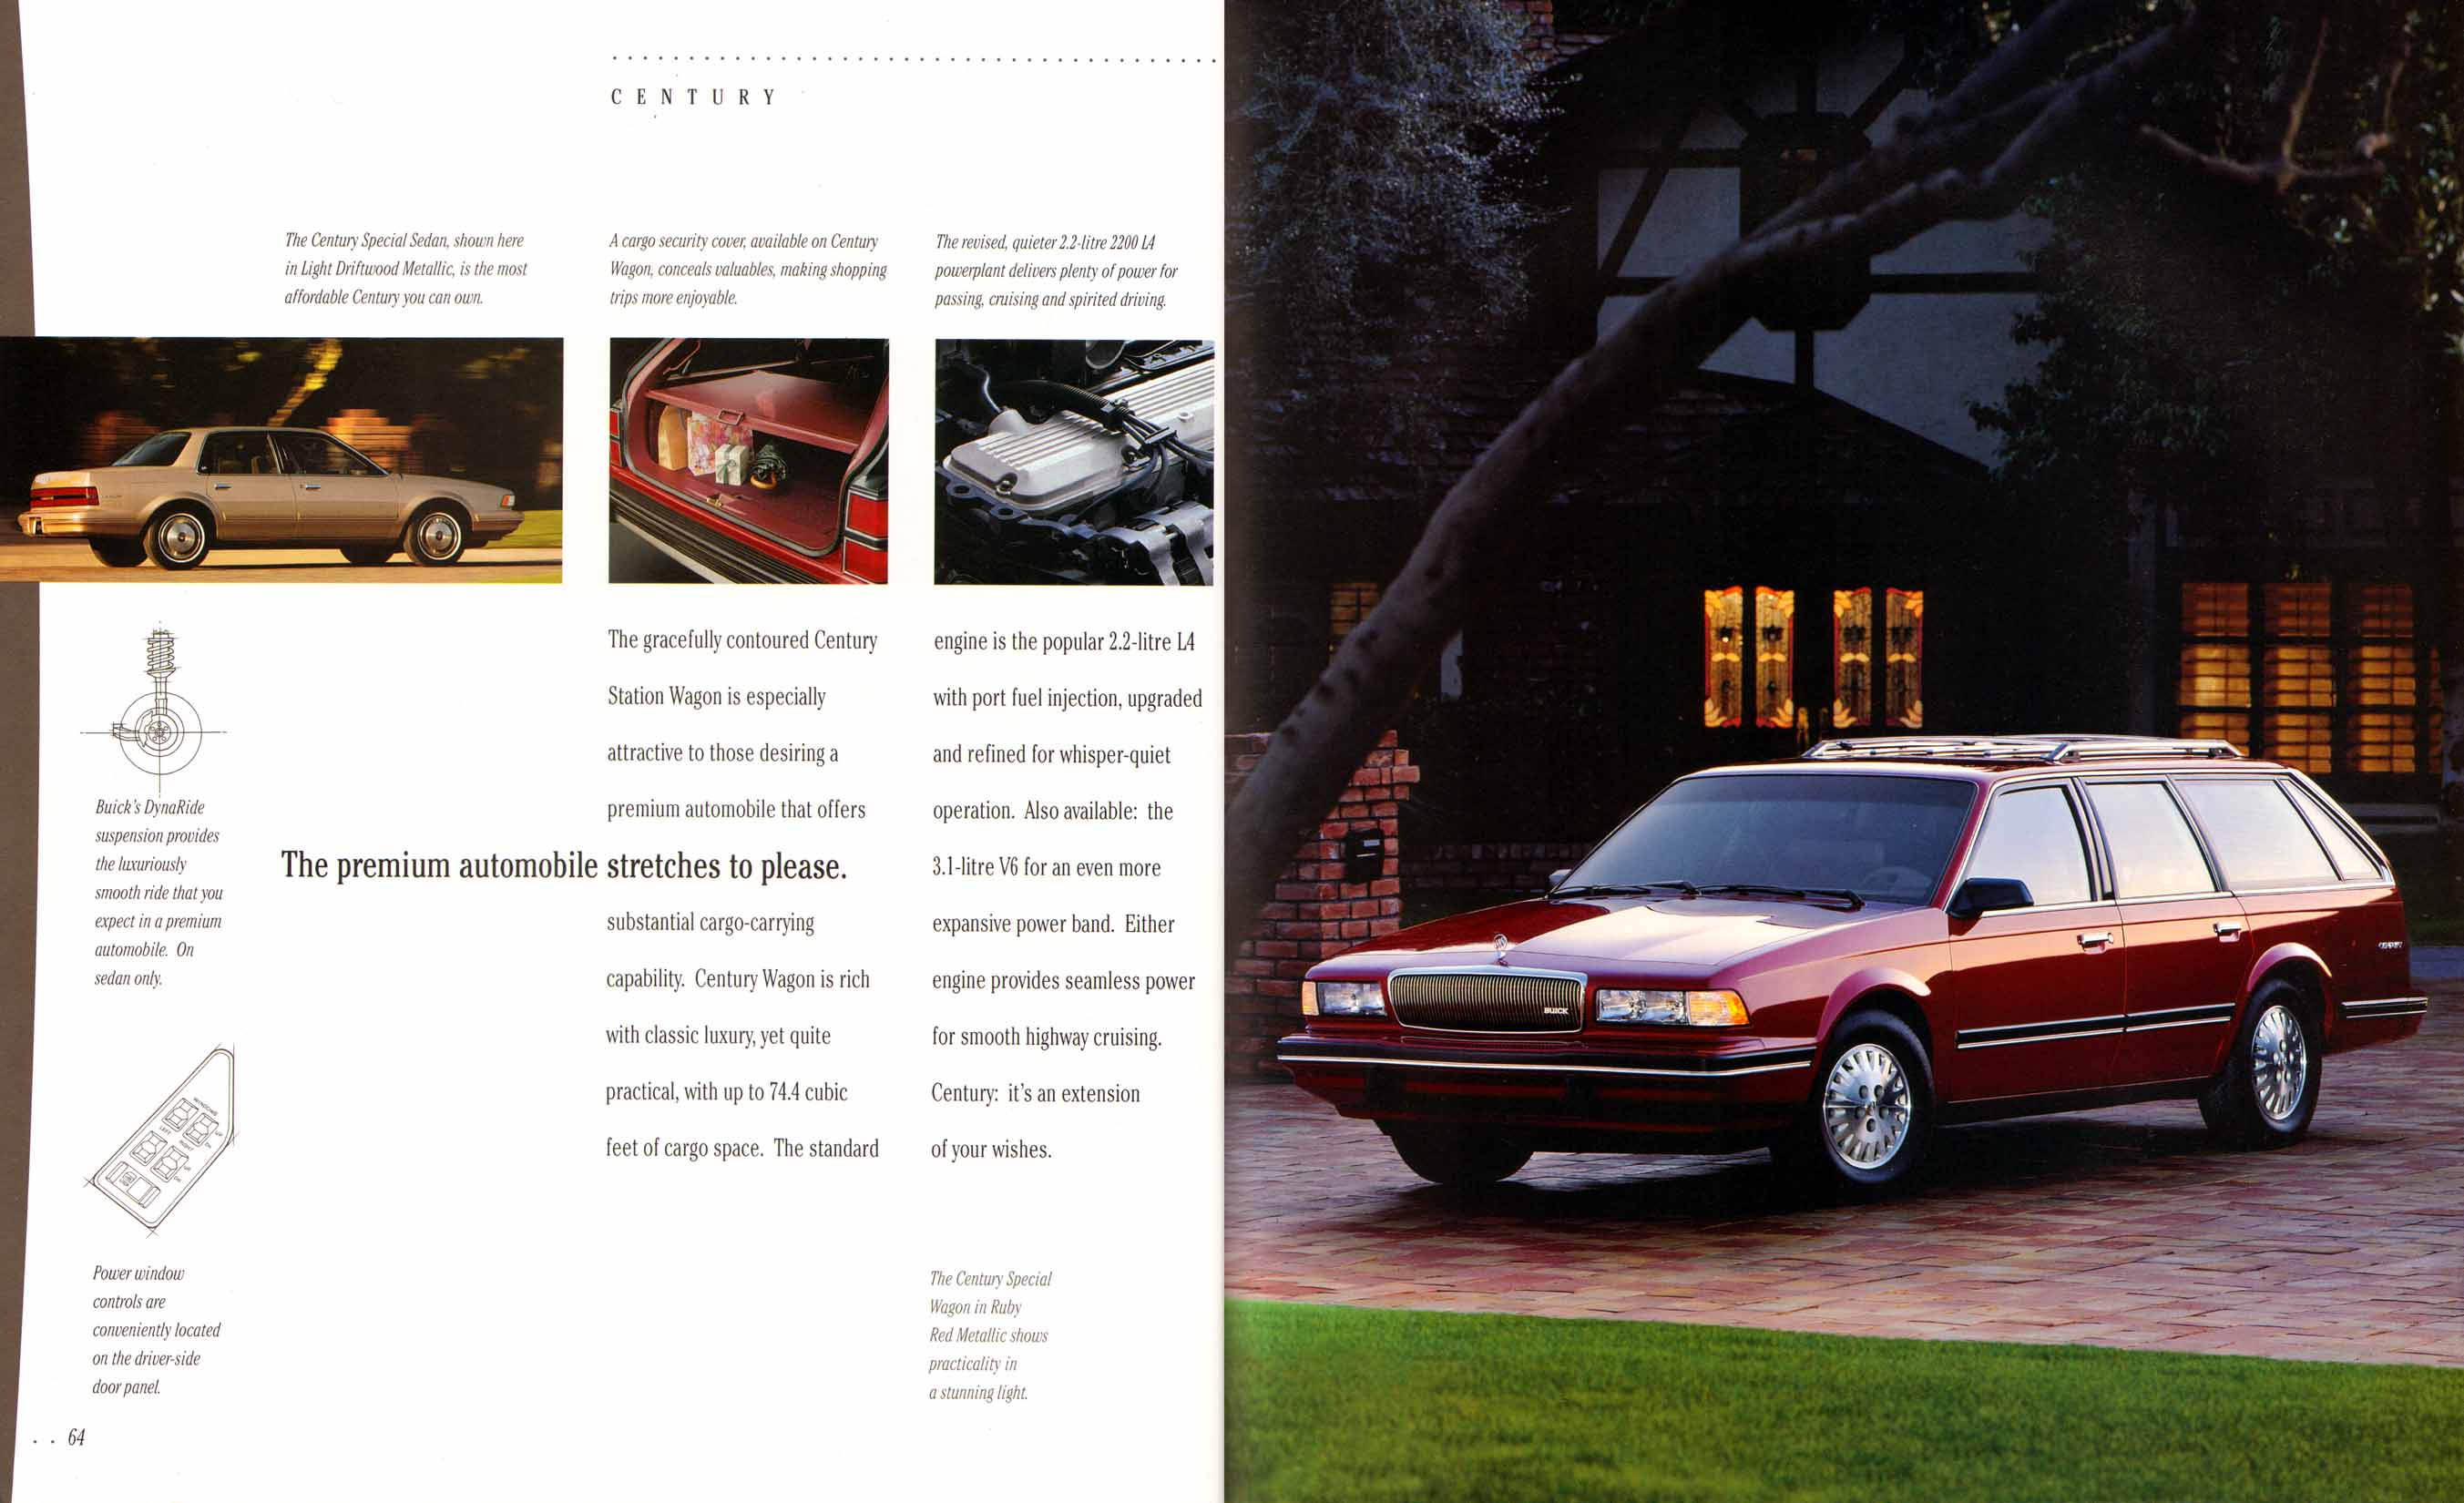 1995 Buick Full Line Prestige-64-65